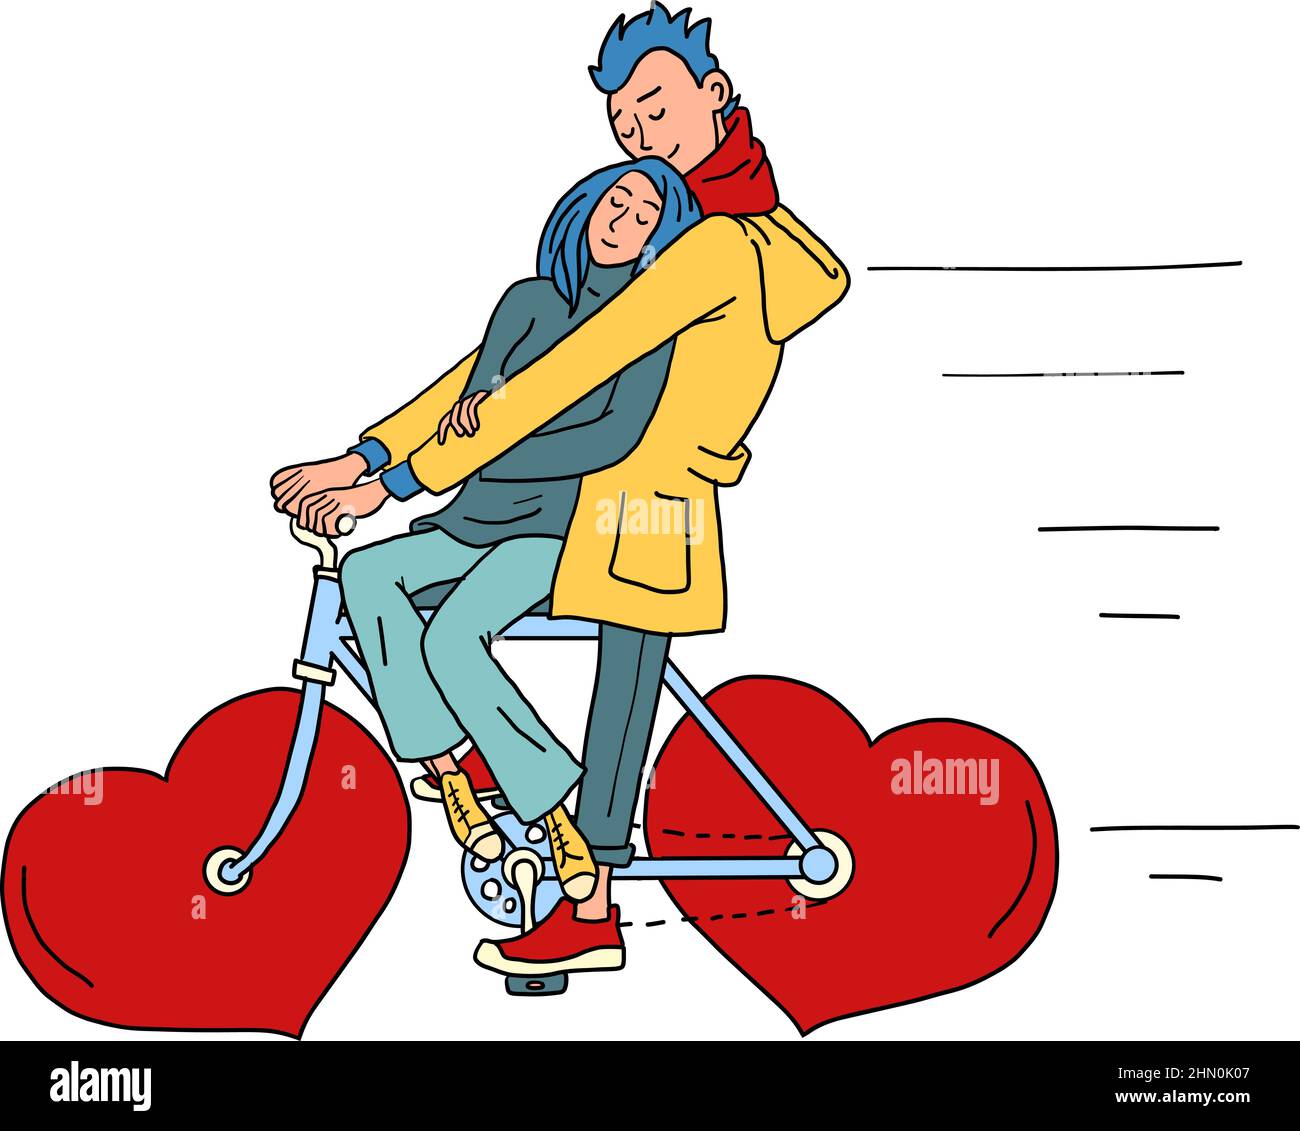 un couple amoureux manège un vélo, un coeur rouge de valentin au lieu de roues.Saint-Valentin Illustration de Vecteur